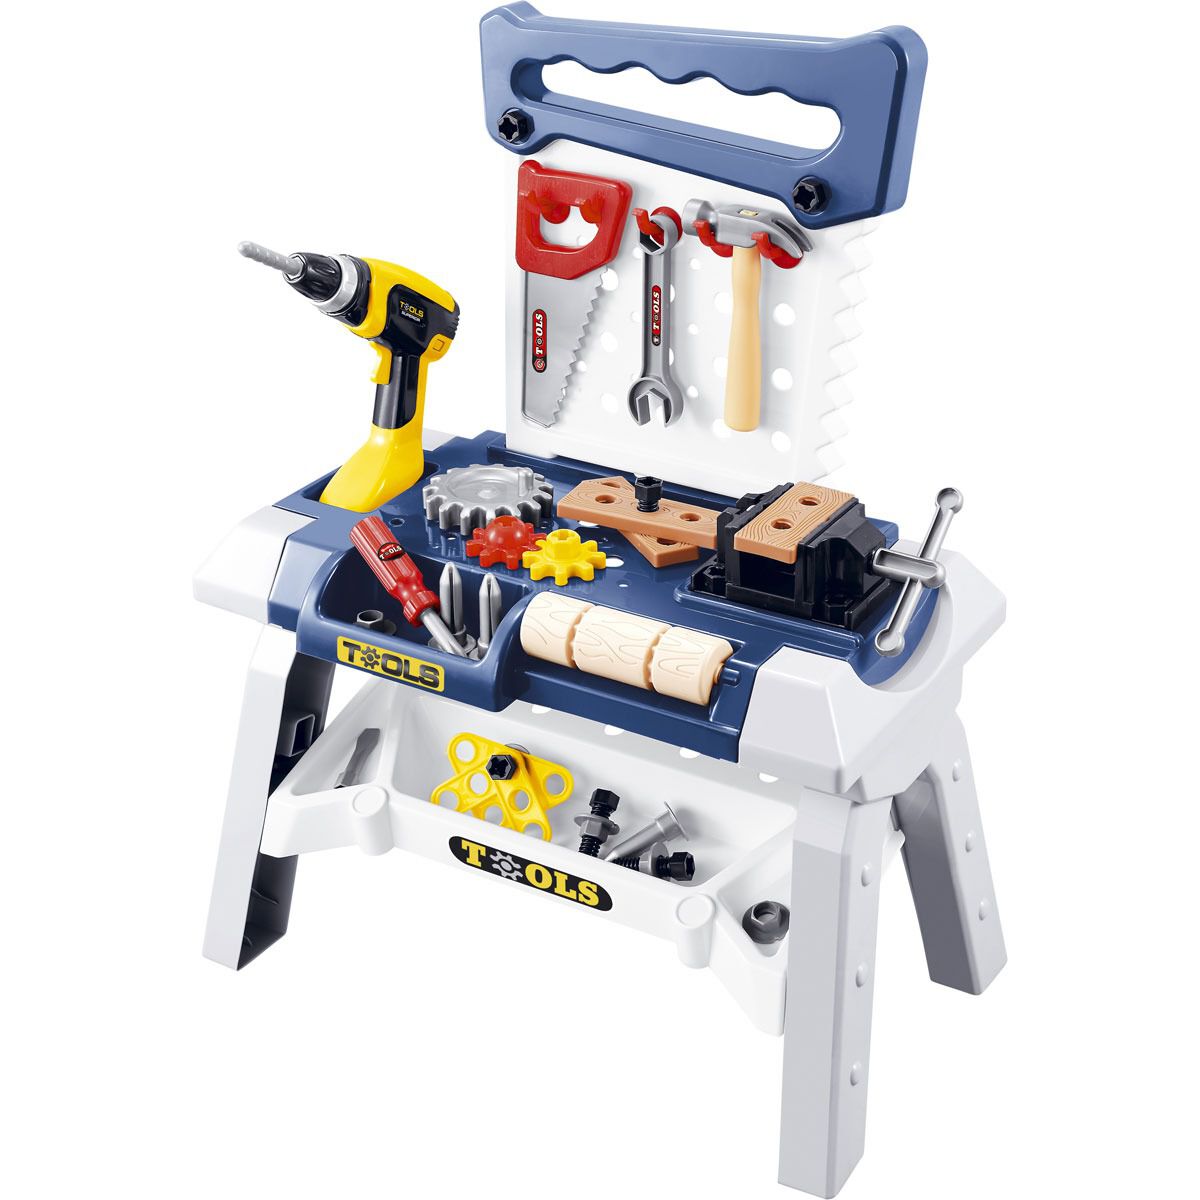 bosch kids tool set